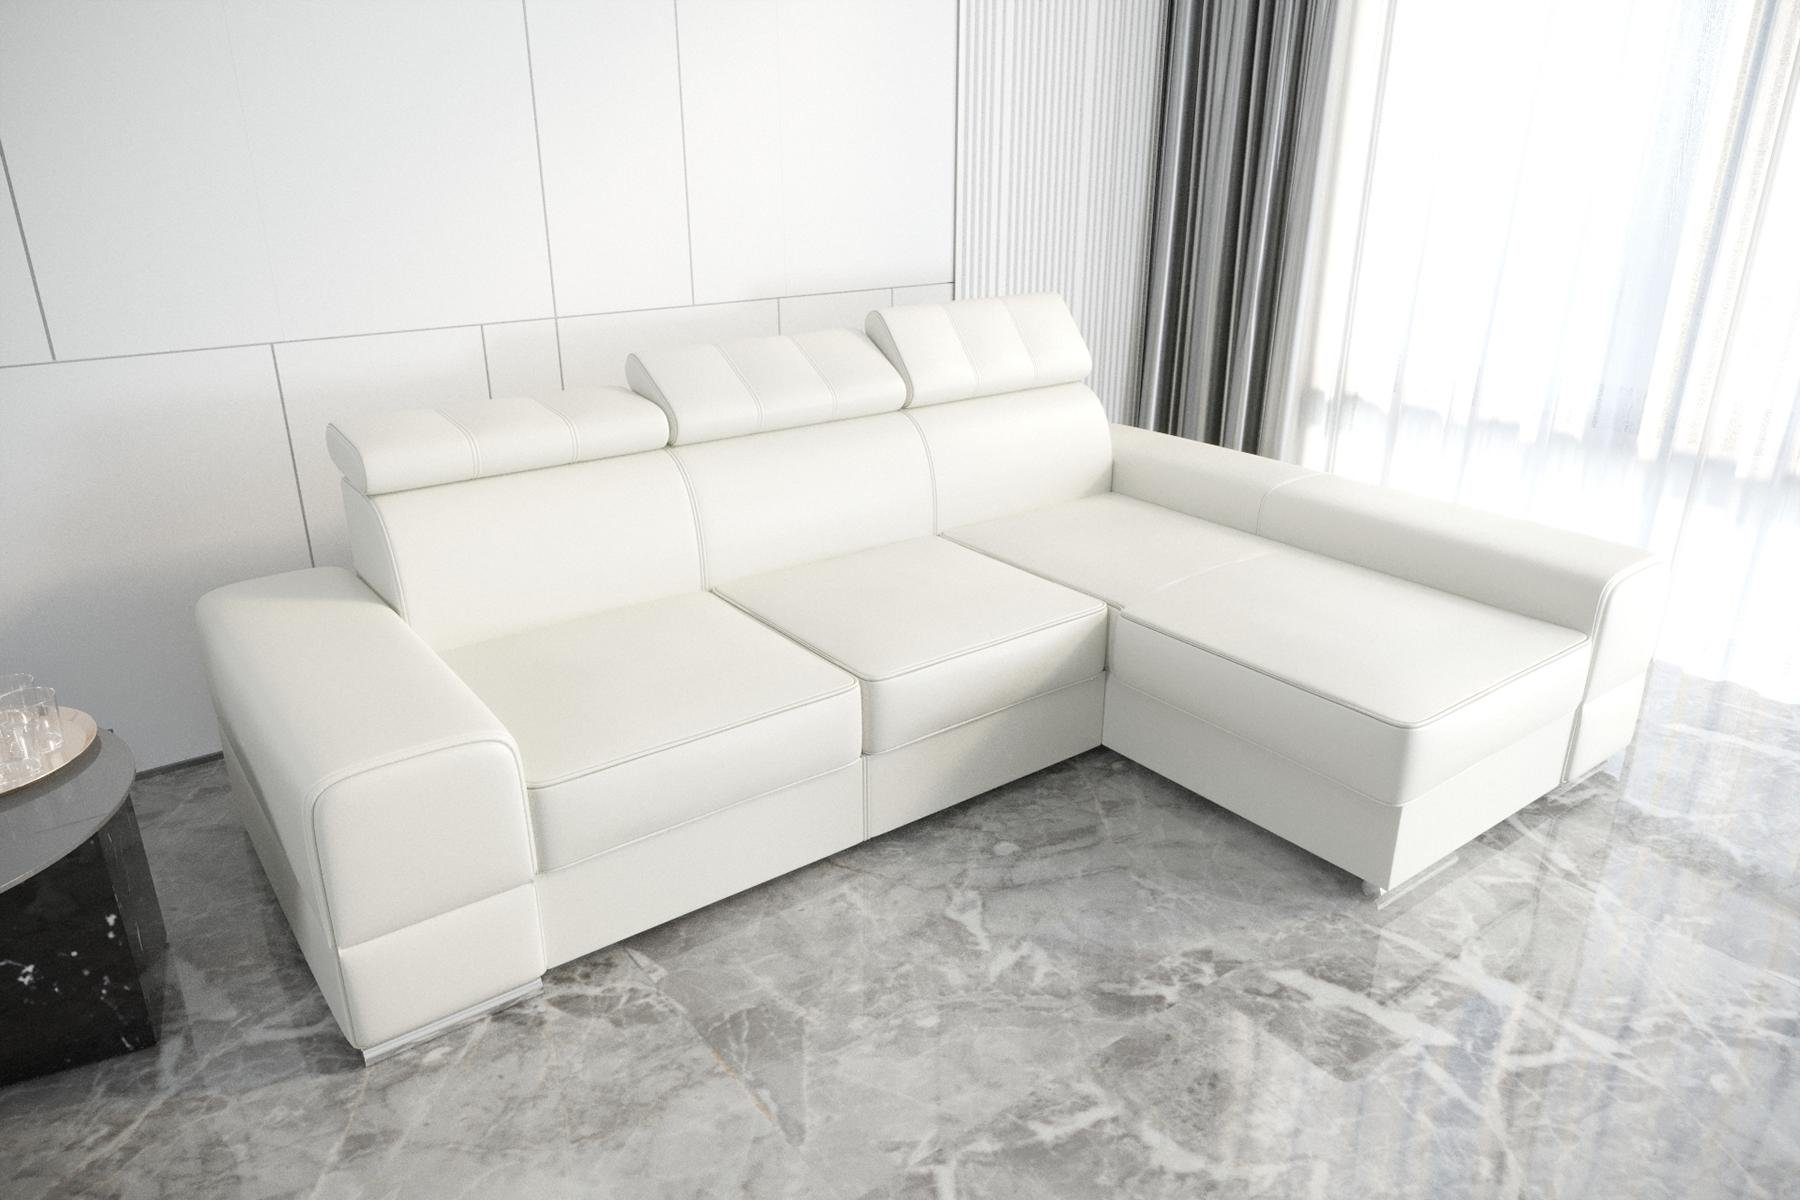 Ecksofa JVmoebel Möbel Europe Neu, Ecksofa in Beiges L-Form Made Couch Designer Weiß Luxus Wohnzimmer